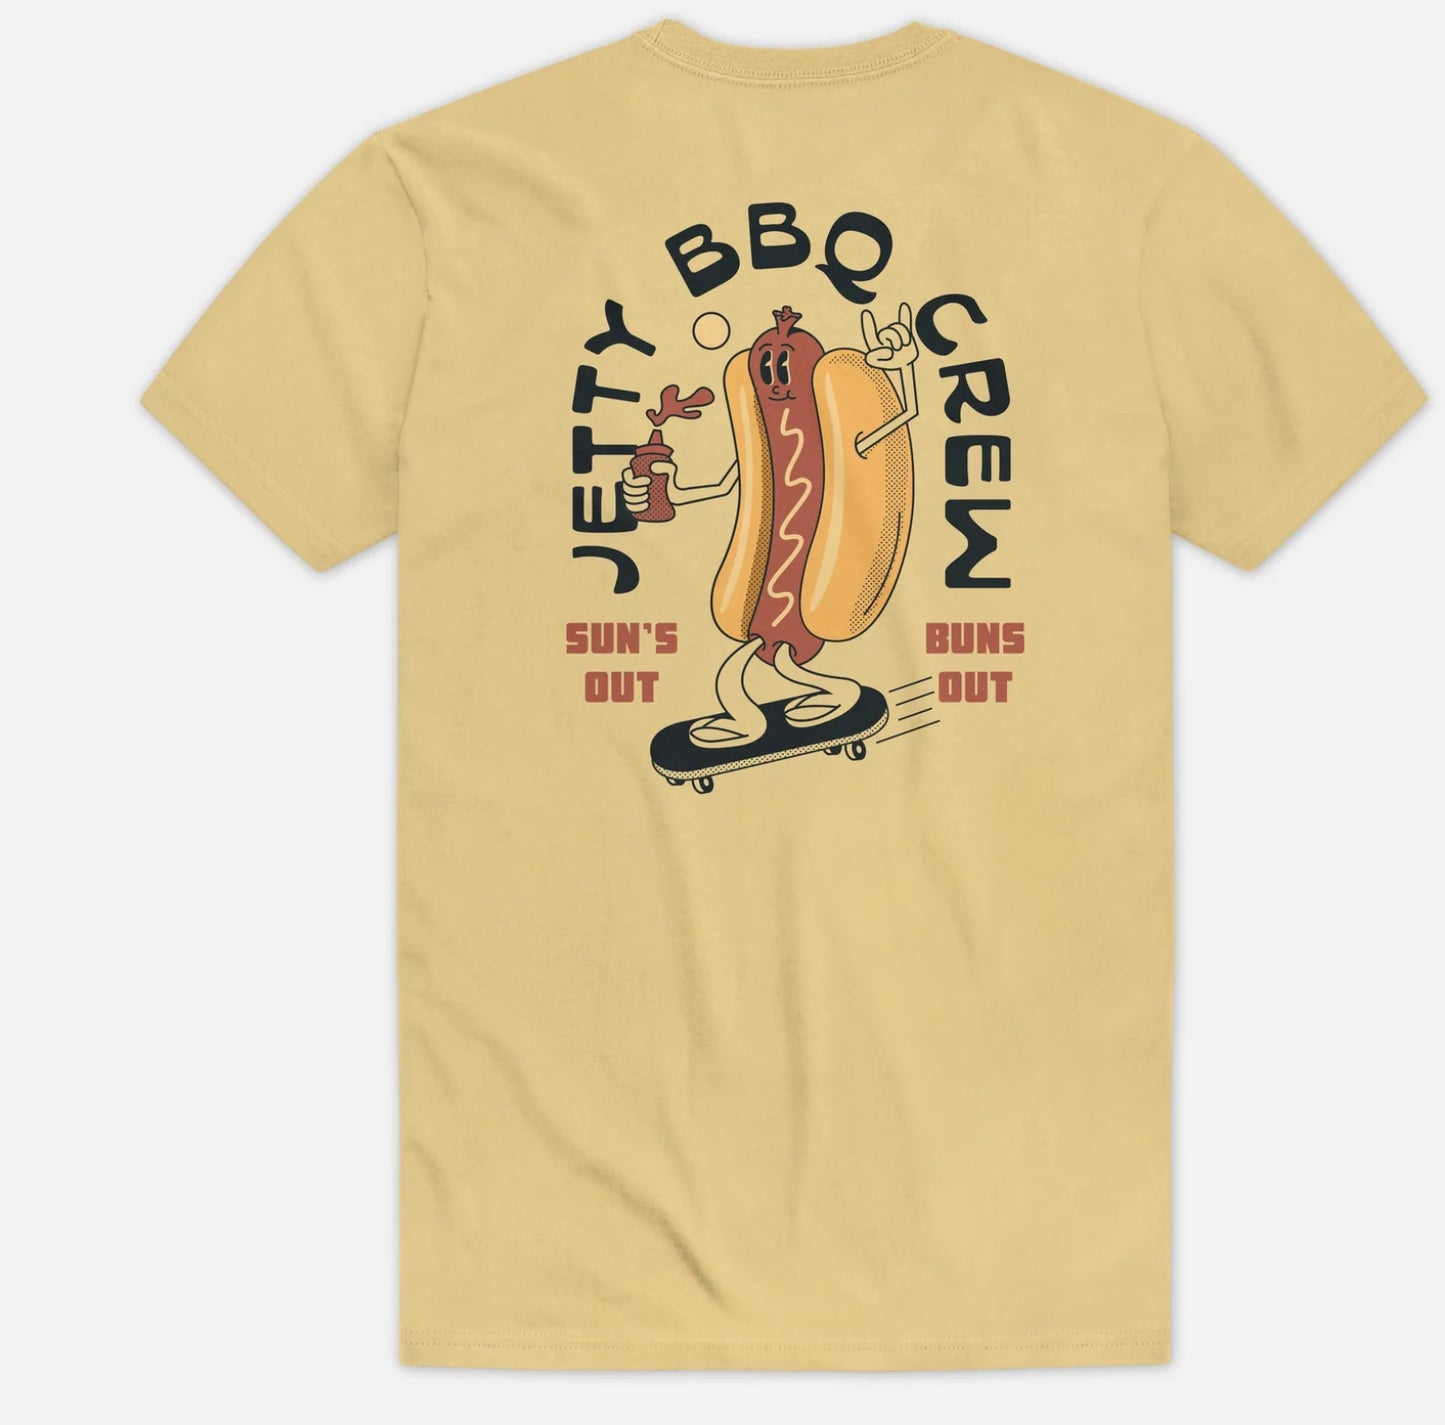 Jetty Hotdog crew tee